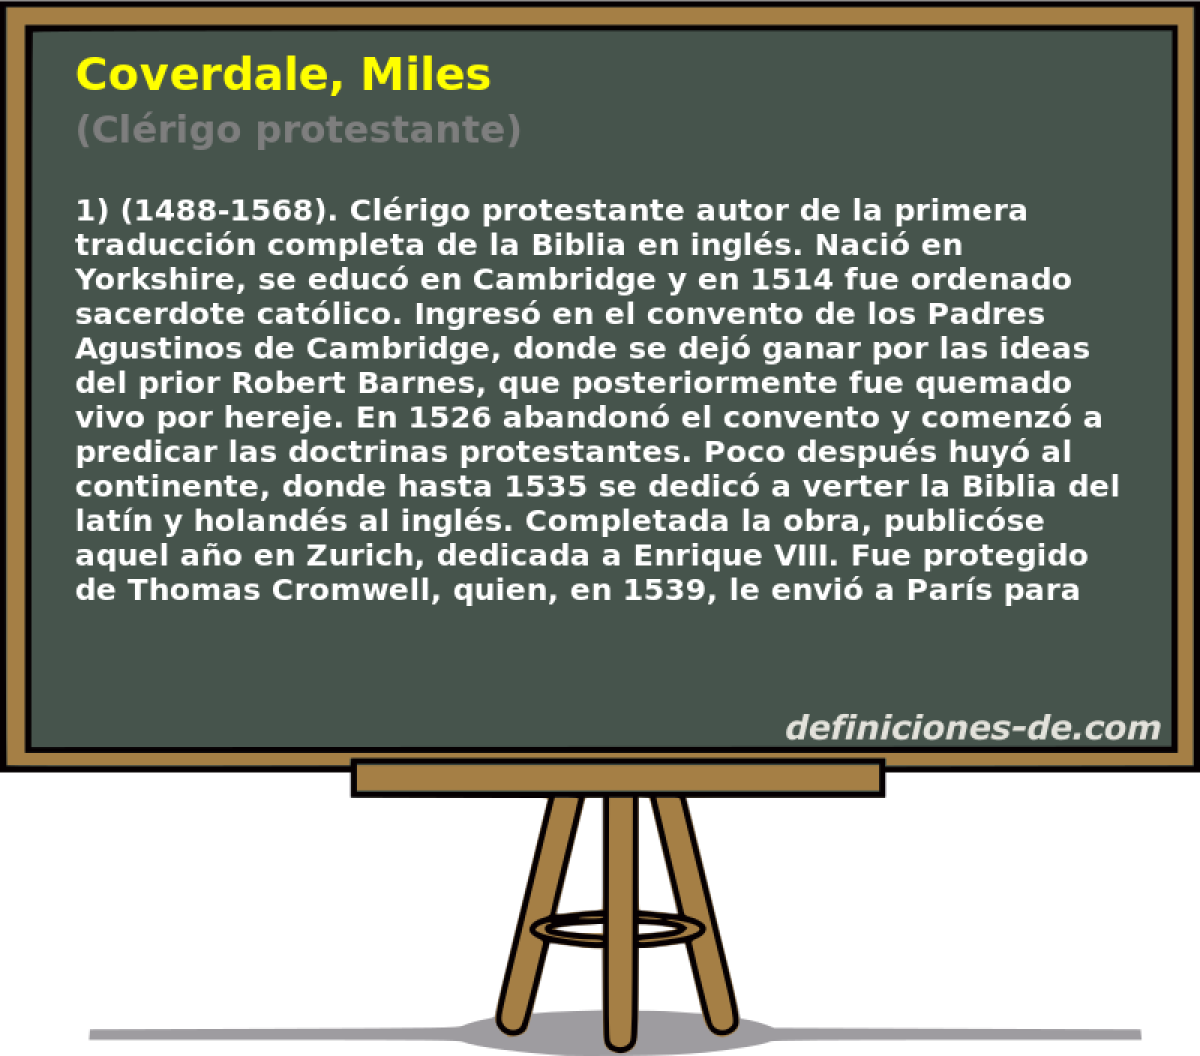 Coverdale, Miles (Clrigo protestante)